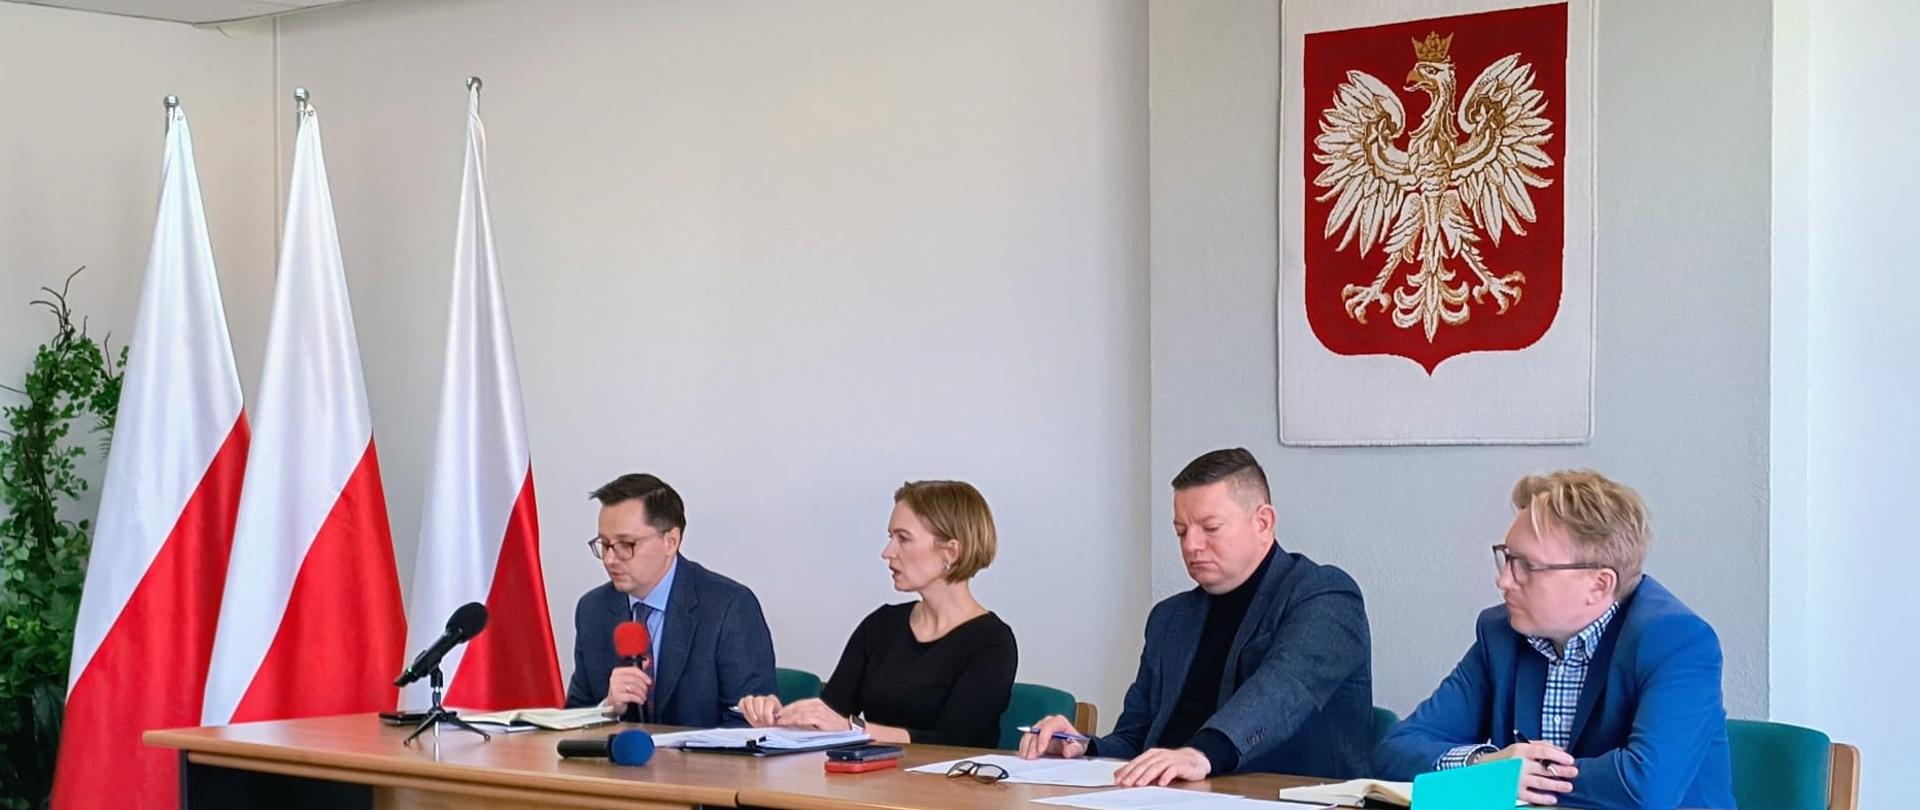 Przemówienie wiceprezesa Wód Polskich Mateusza Balcerowicza na spotkaniu w Bielsku-Białej w sprawie gospodarki rybackiej